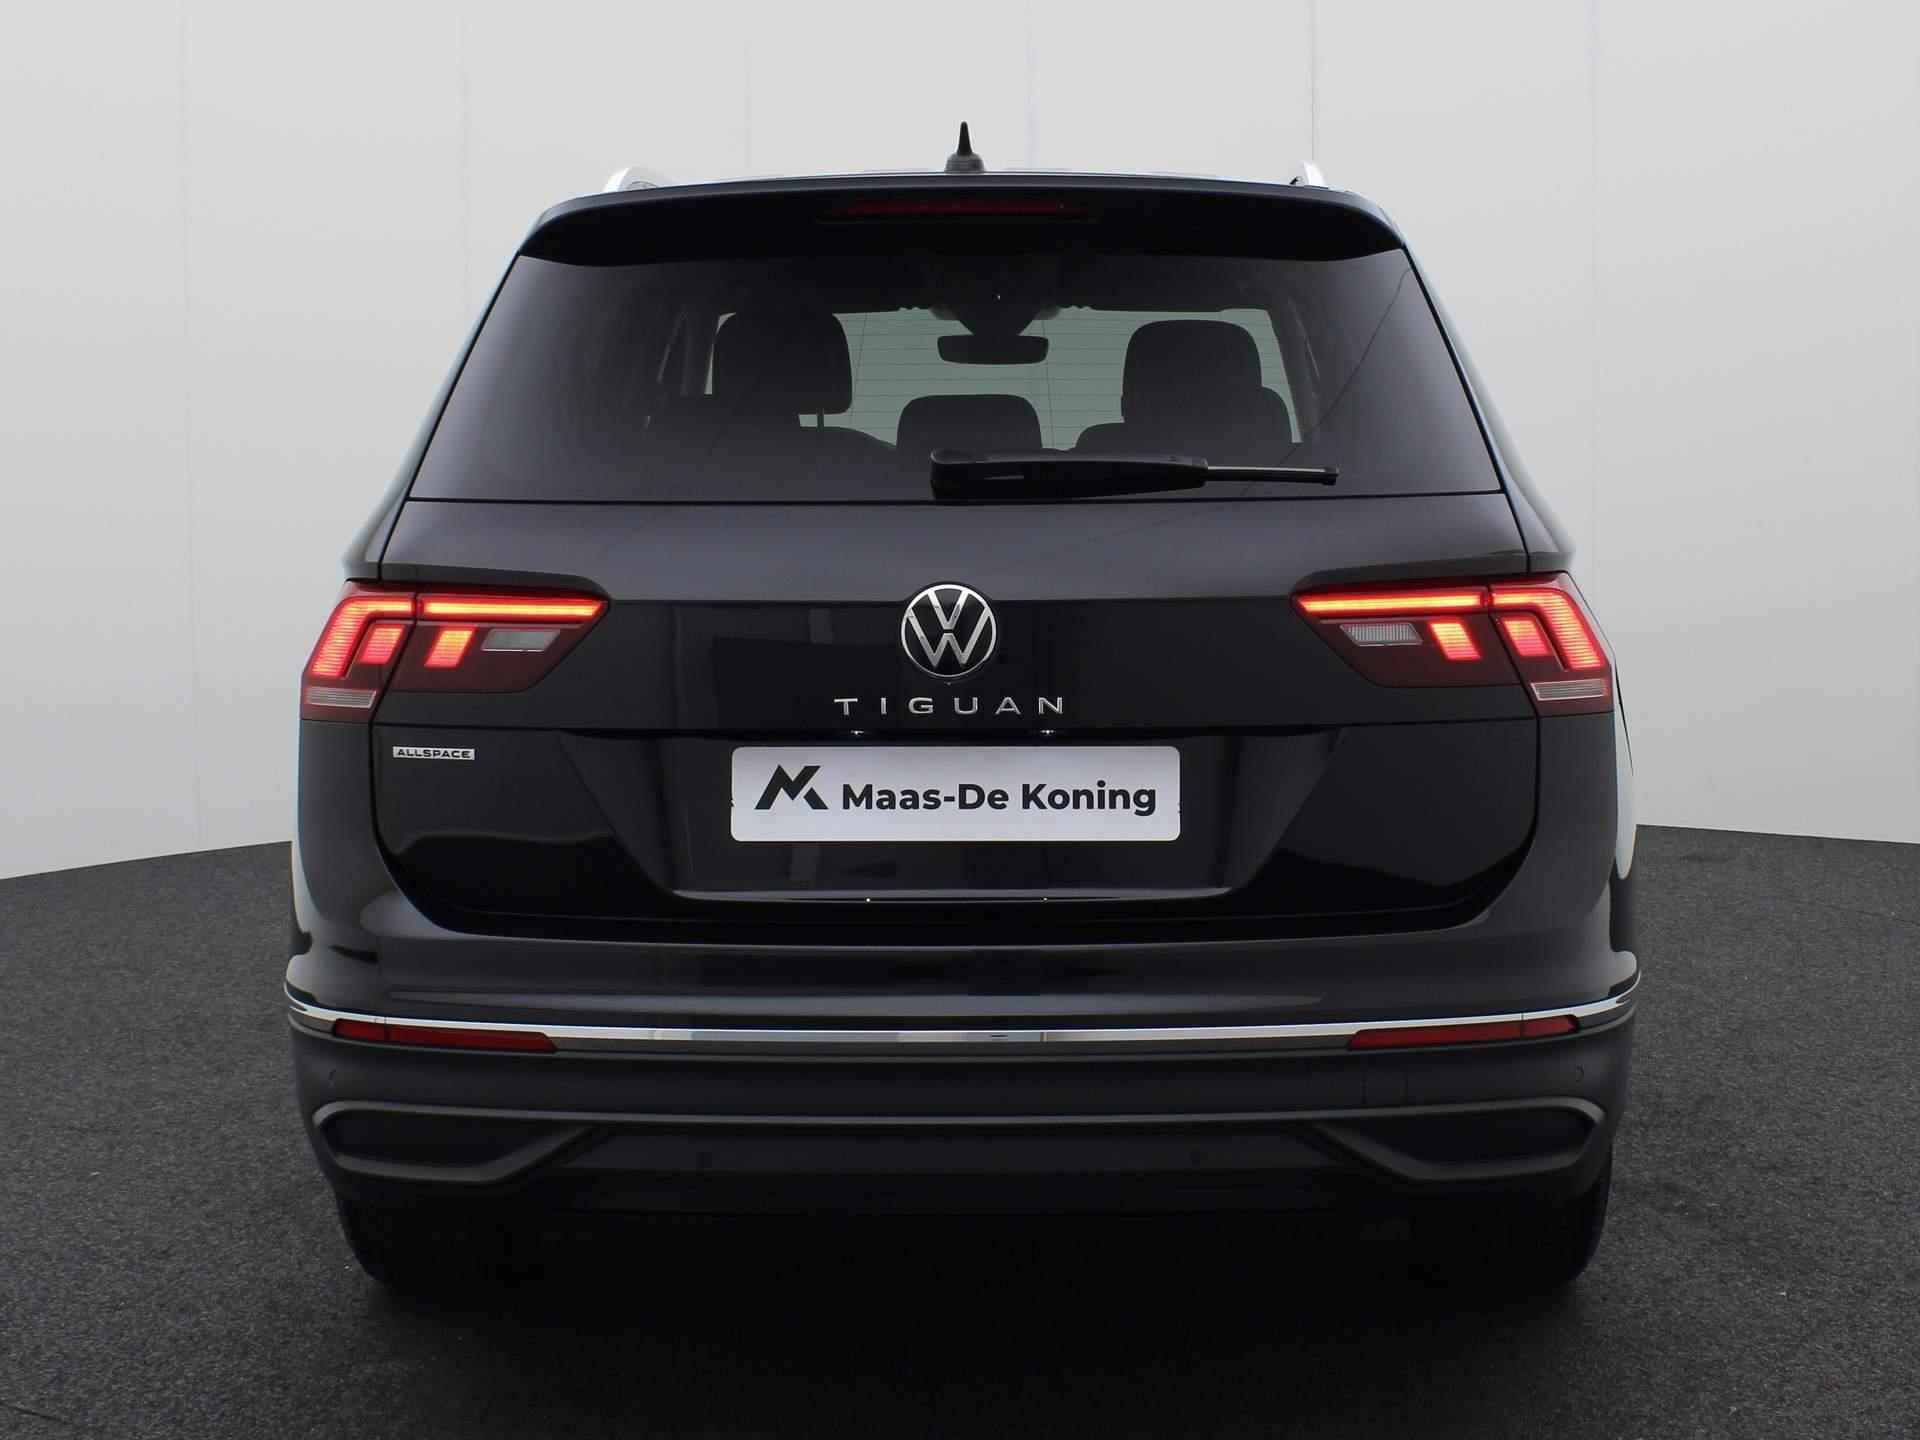 Volkswagen Tiguan Allspace 1.5TSI/150PK Life DSG 7p. · Navigatie · Trekhaak · Parkeersensoren - 29/36